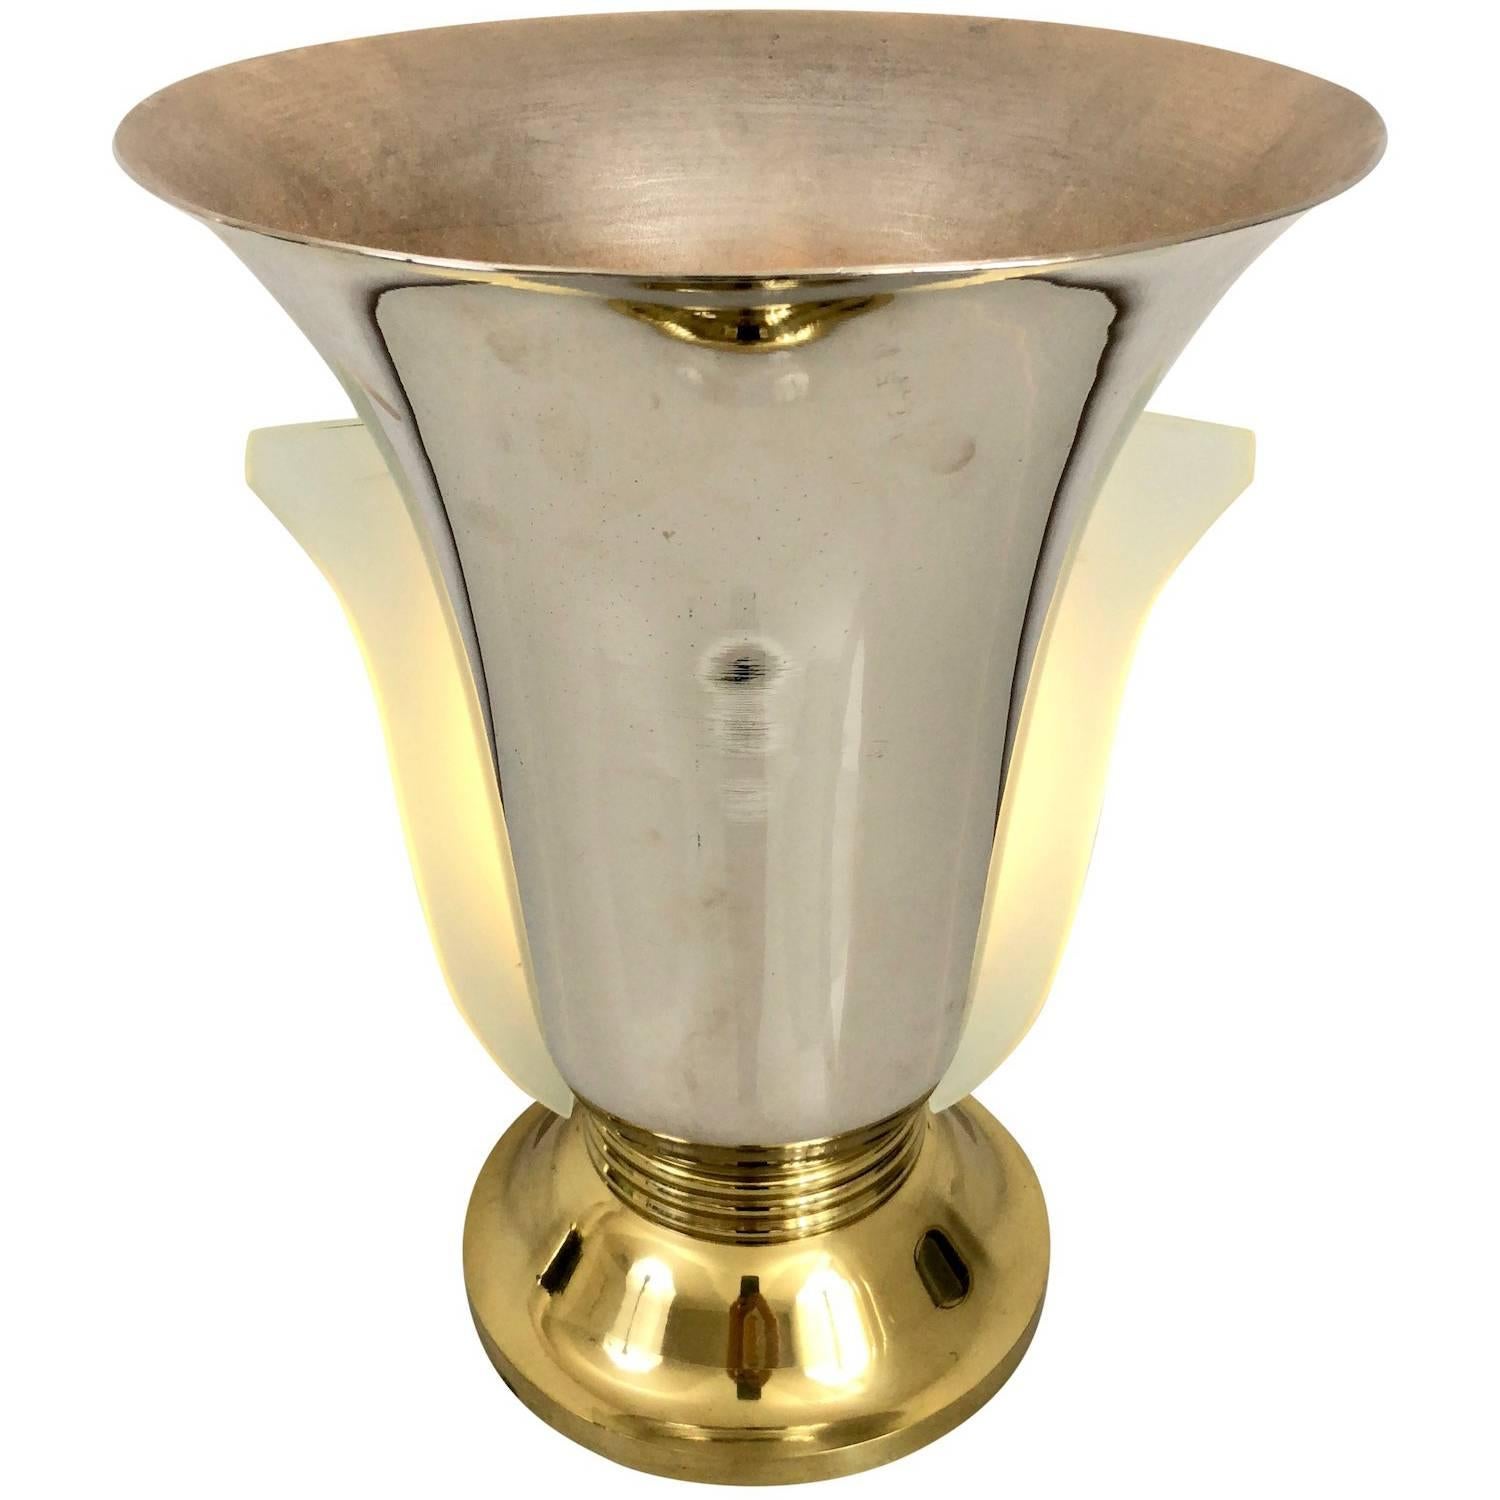 Vase Lamp with Sanded Glass in Tulip Shape, Chromed, Art Deco, France 1930s